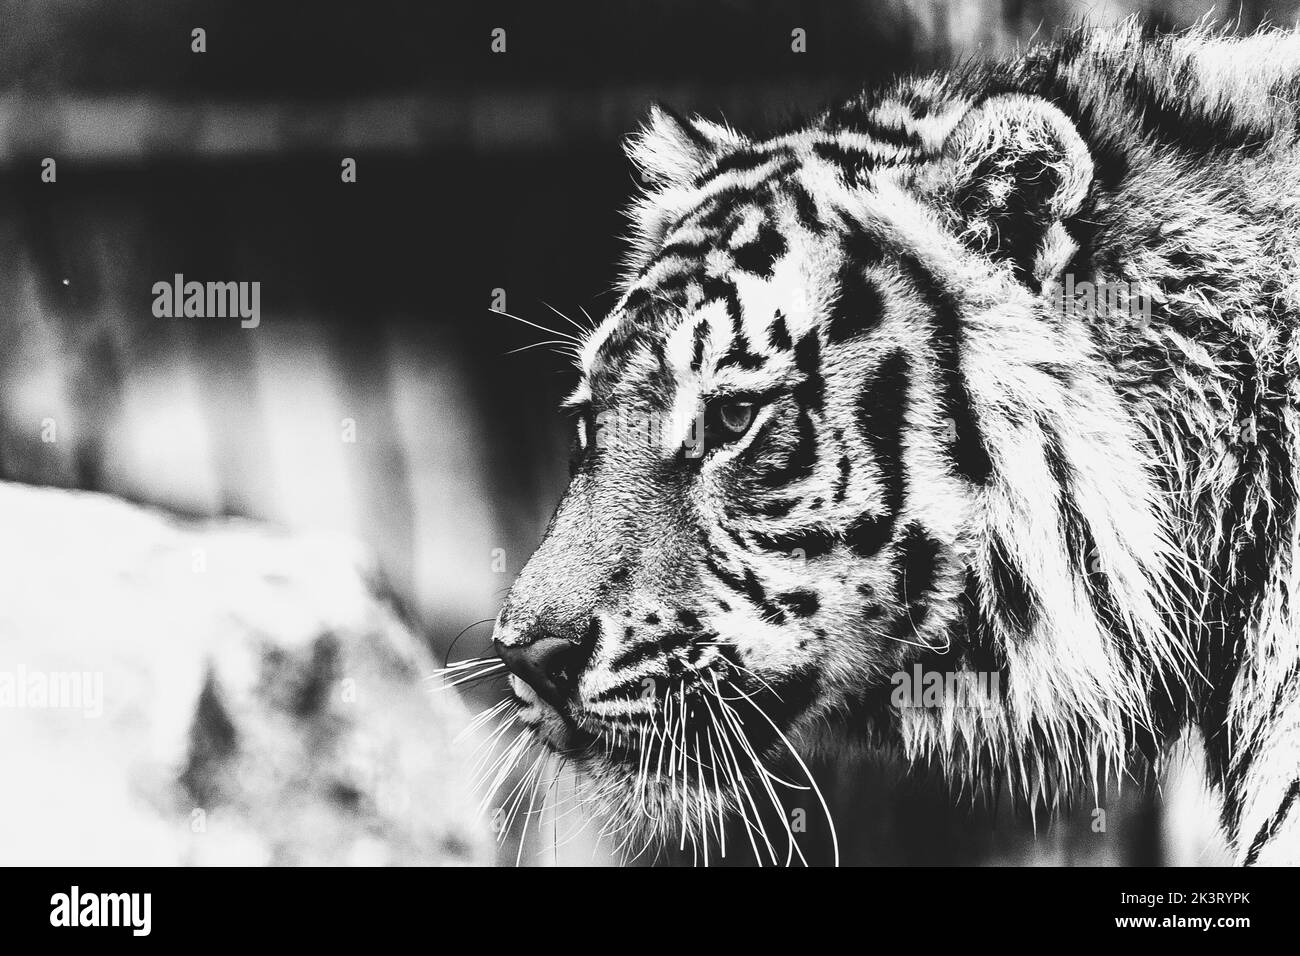 Ein schwarz-weißes Porträt eines sibirischen Tigers, der sich umschaut.das große Raubtier sieht sehr majestätisch aus. Die Großkatze ist auf der Suche nach Beute. Stockfoto